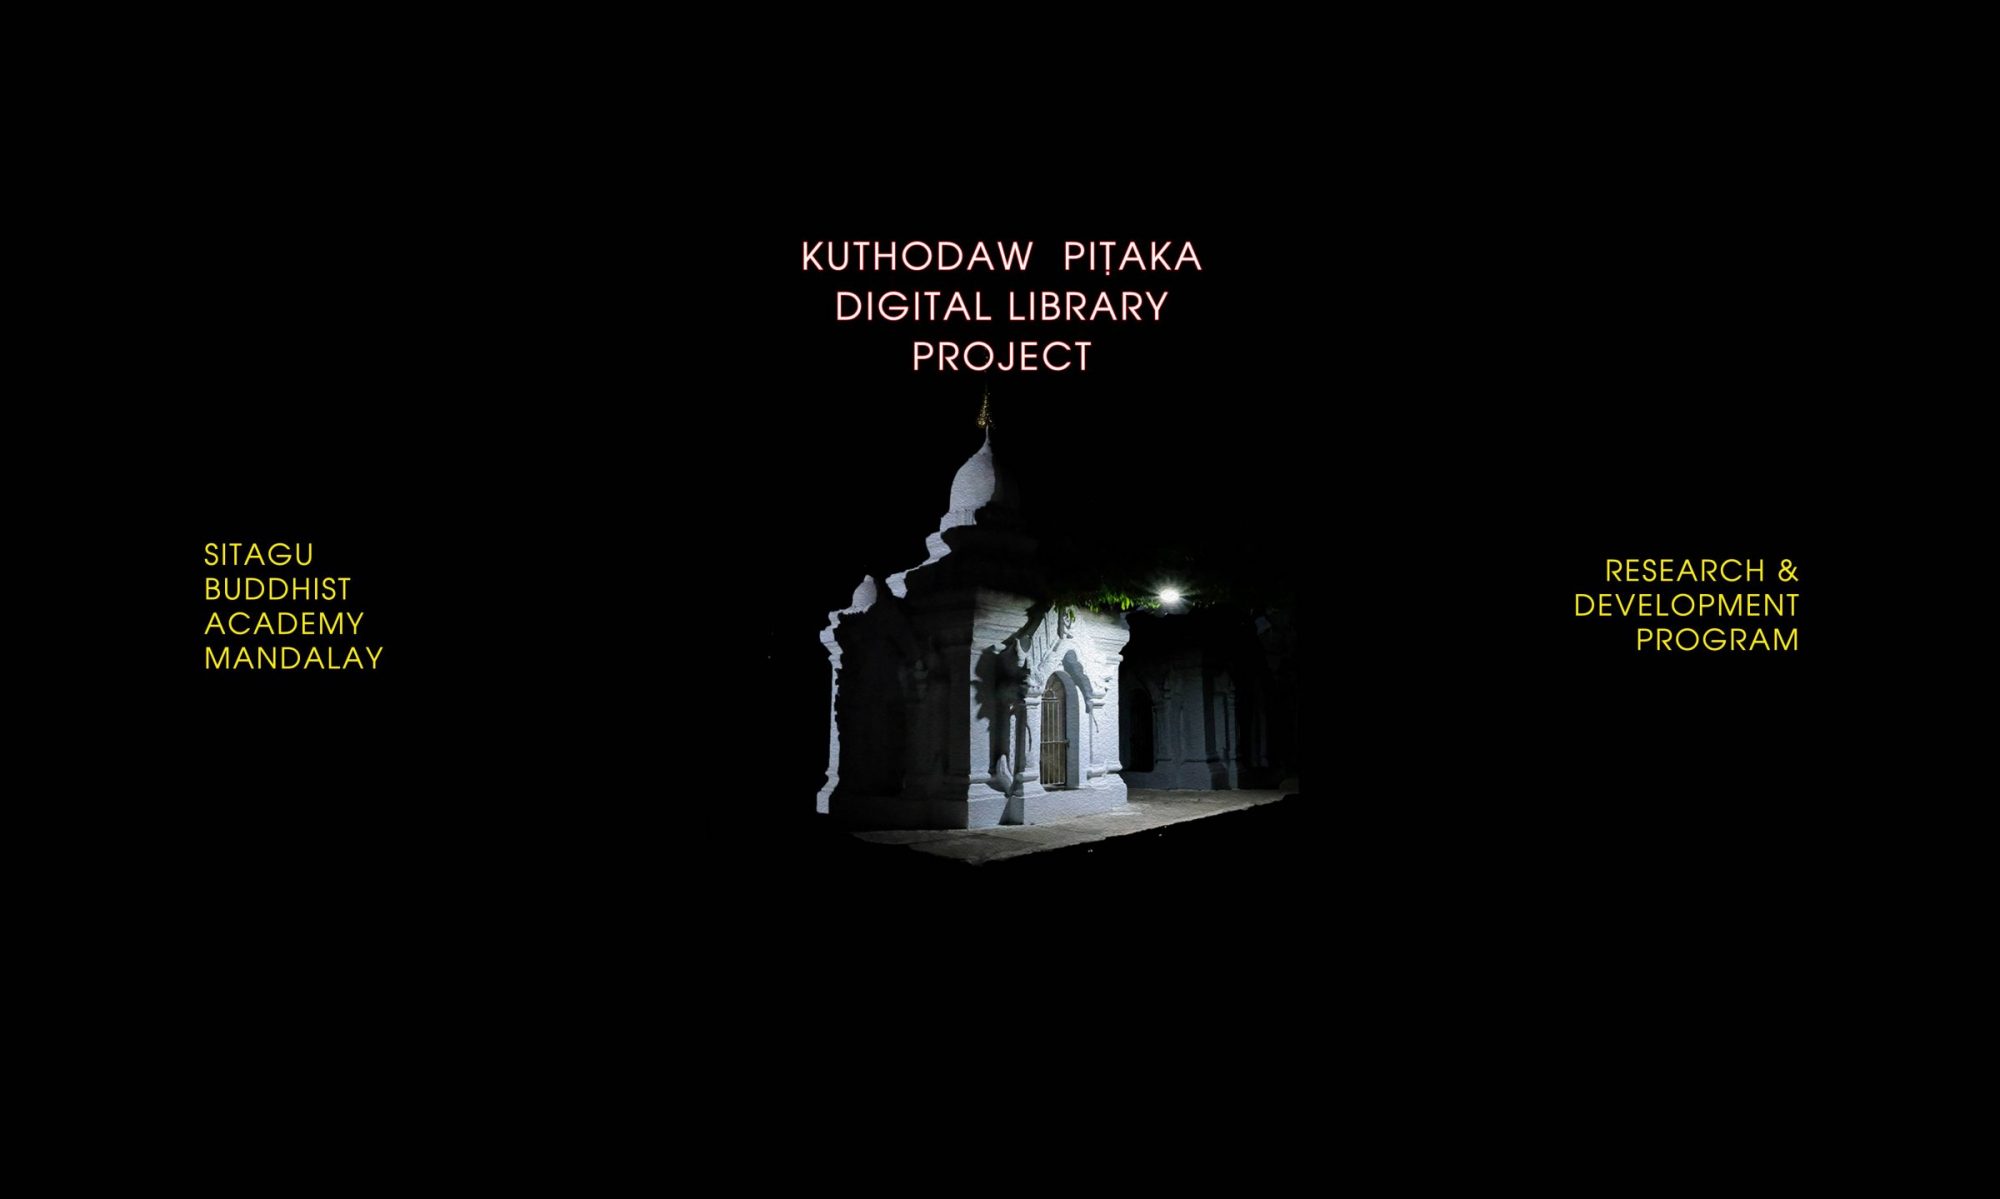 Kuthodaw Pitaka Digital Library